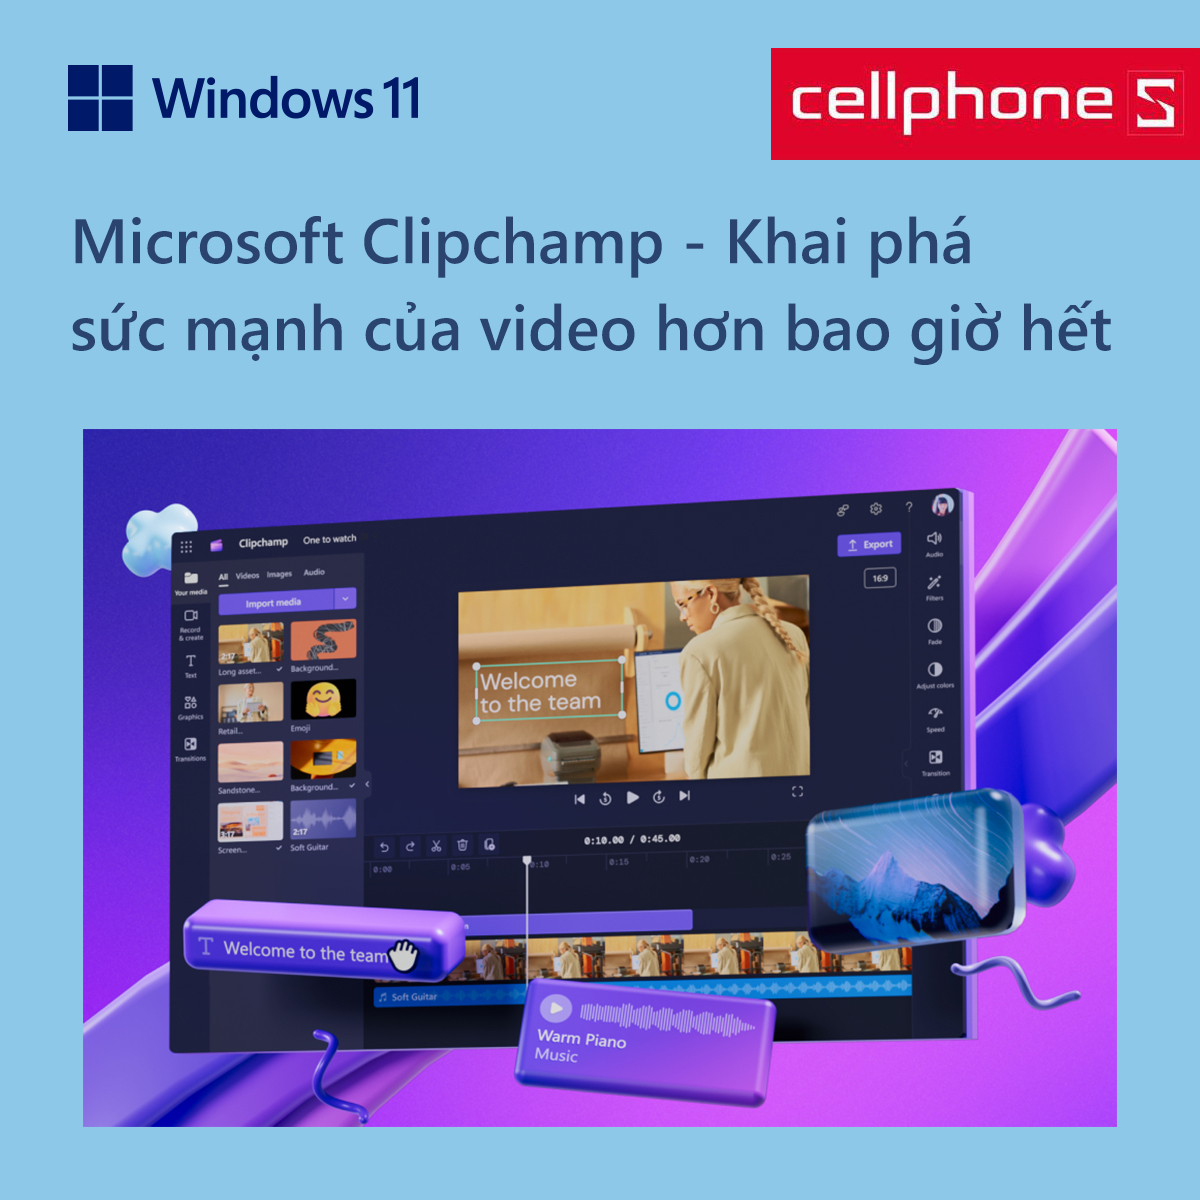 Microsoft Clipchamp: Khai phá sức mạnh của video hơn bao giờ hết!